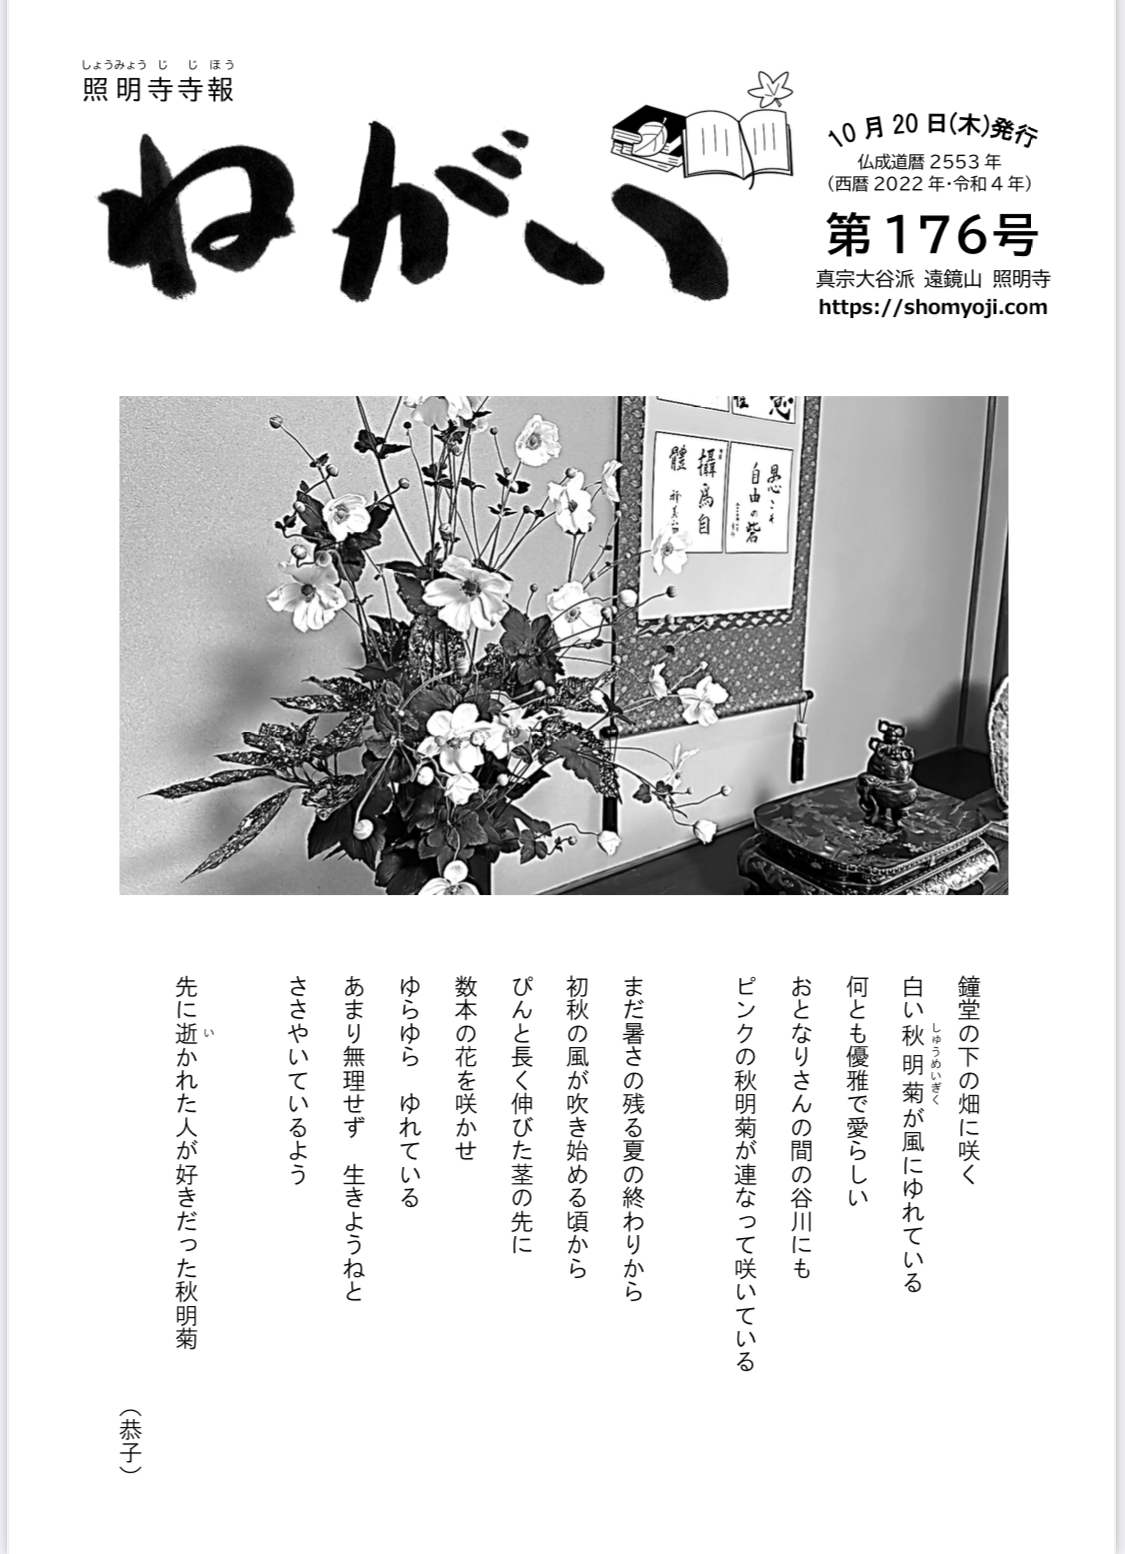 寺報「ねがい」 第176号 2022年10月20日発行